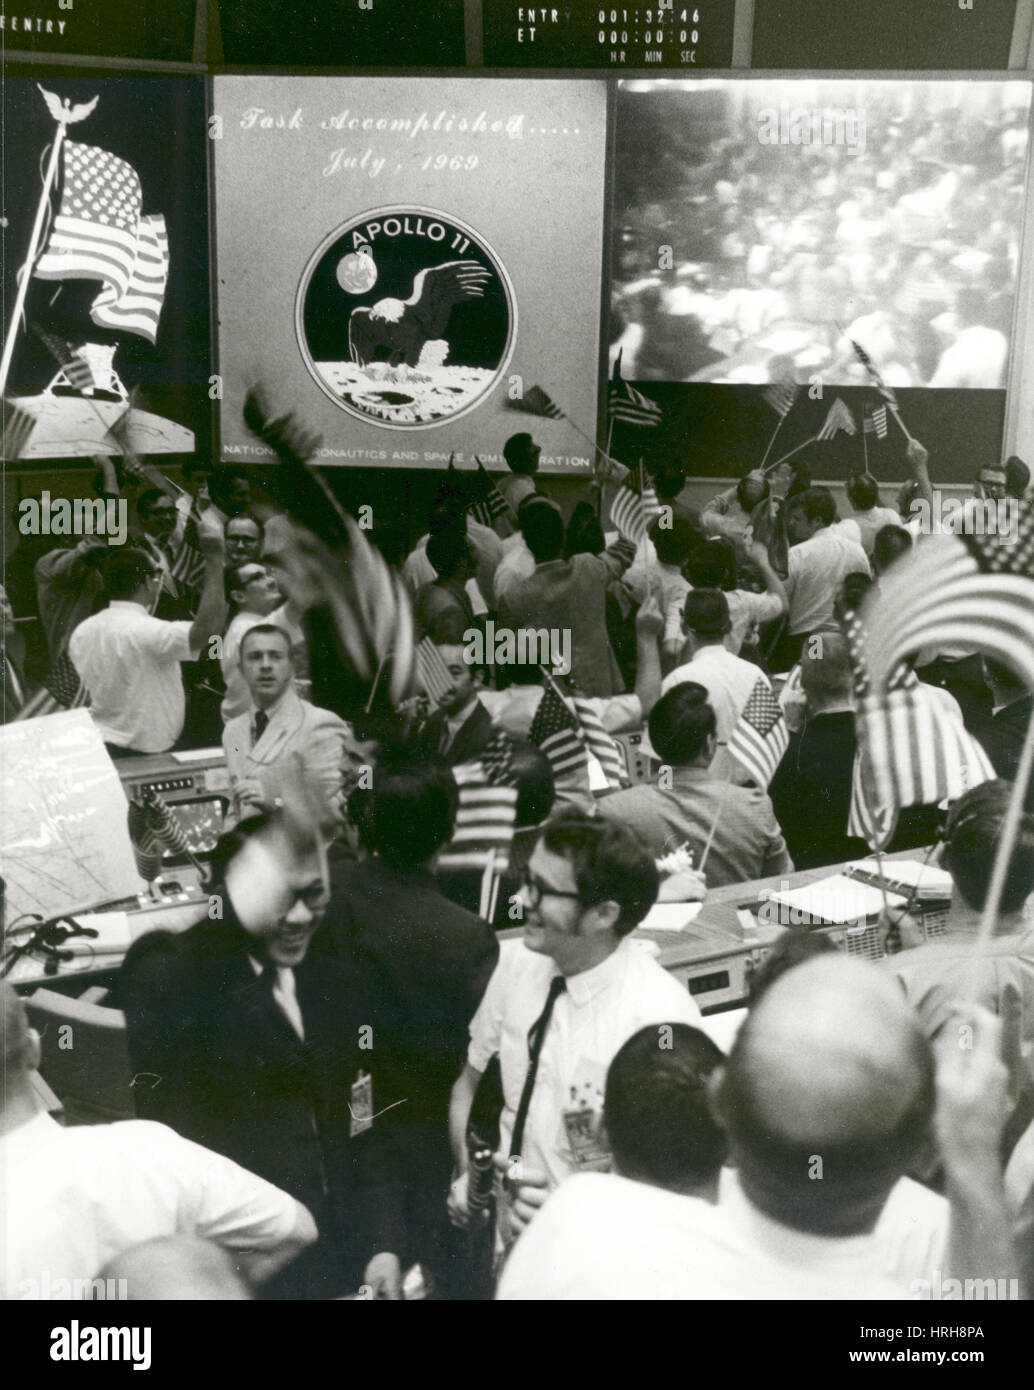 Le Centre de contrôle de mission de célébrer le succès d'Apollo 11 Banque D'Images